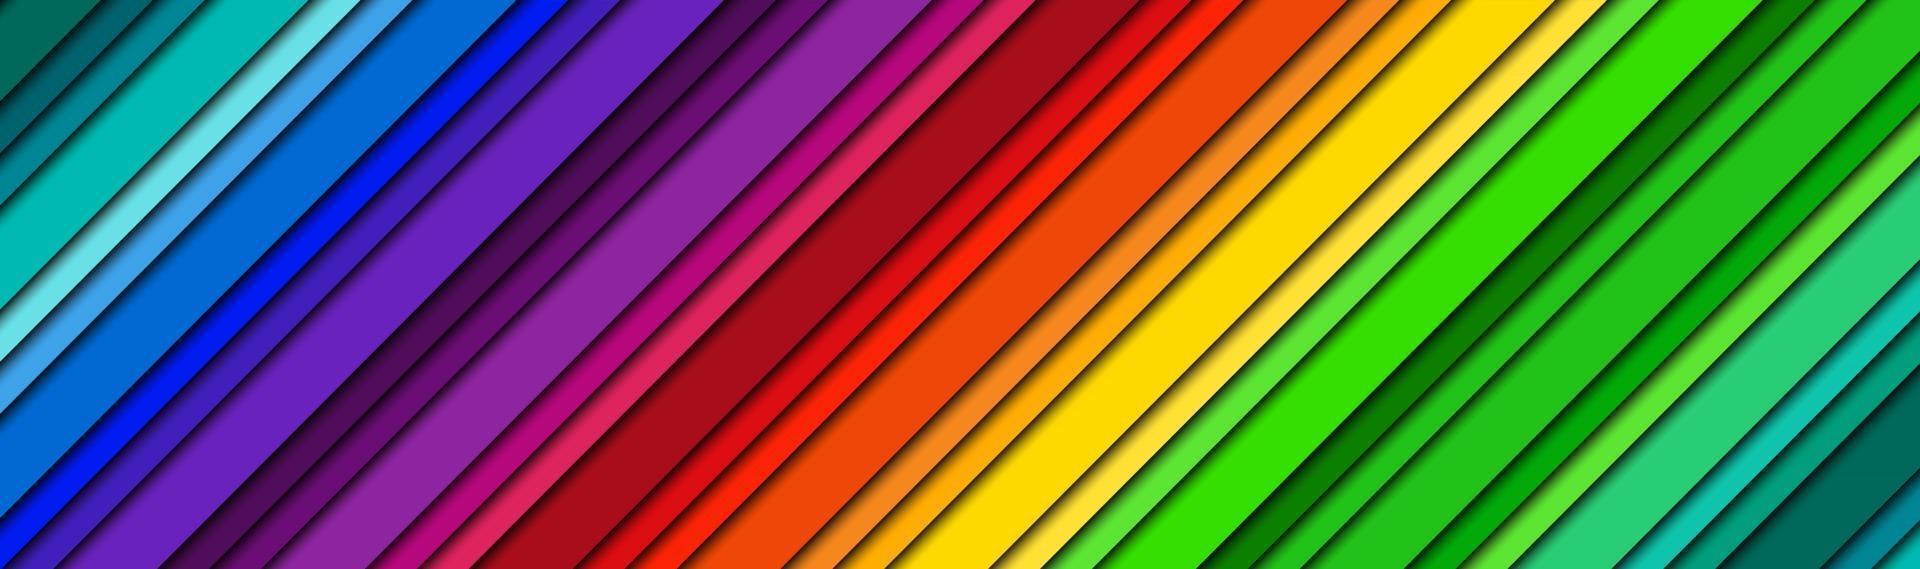 astratto moderno brillante intestazione con linee oblique colorate spettro di colori banner colorato motivo a strisce sfondo moderno illustrazione vettoriale